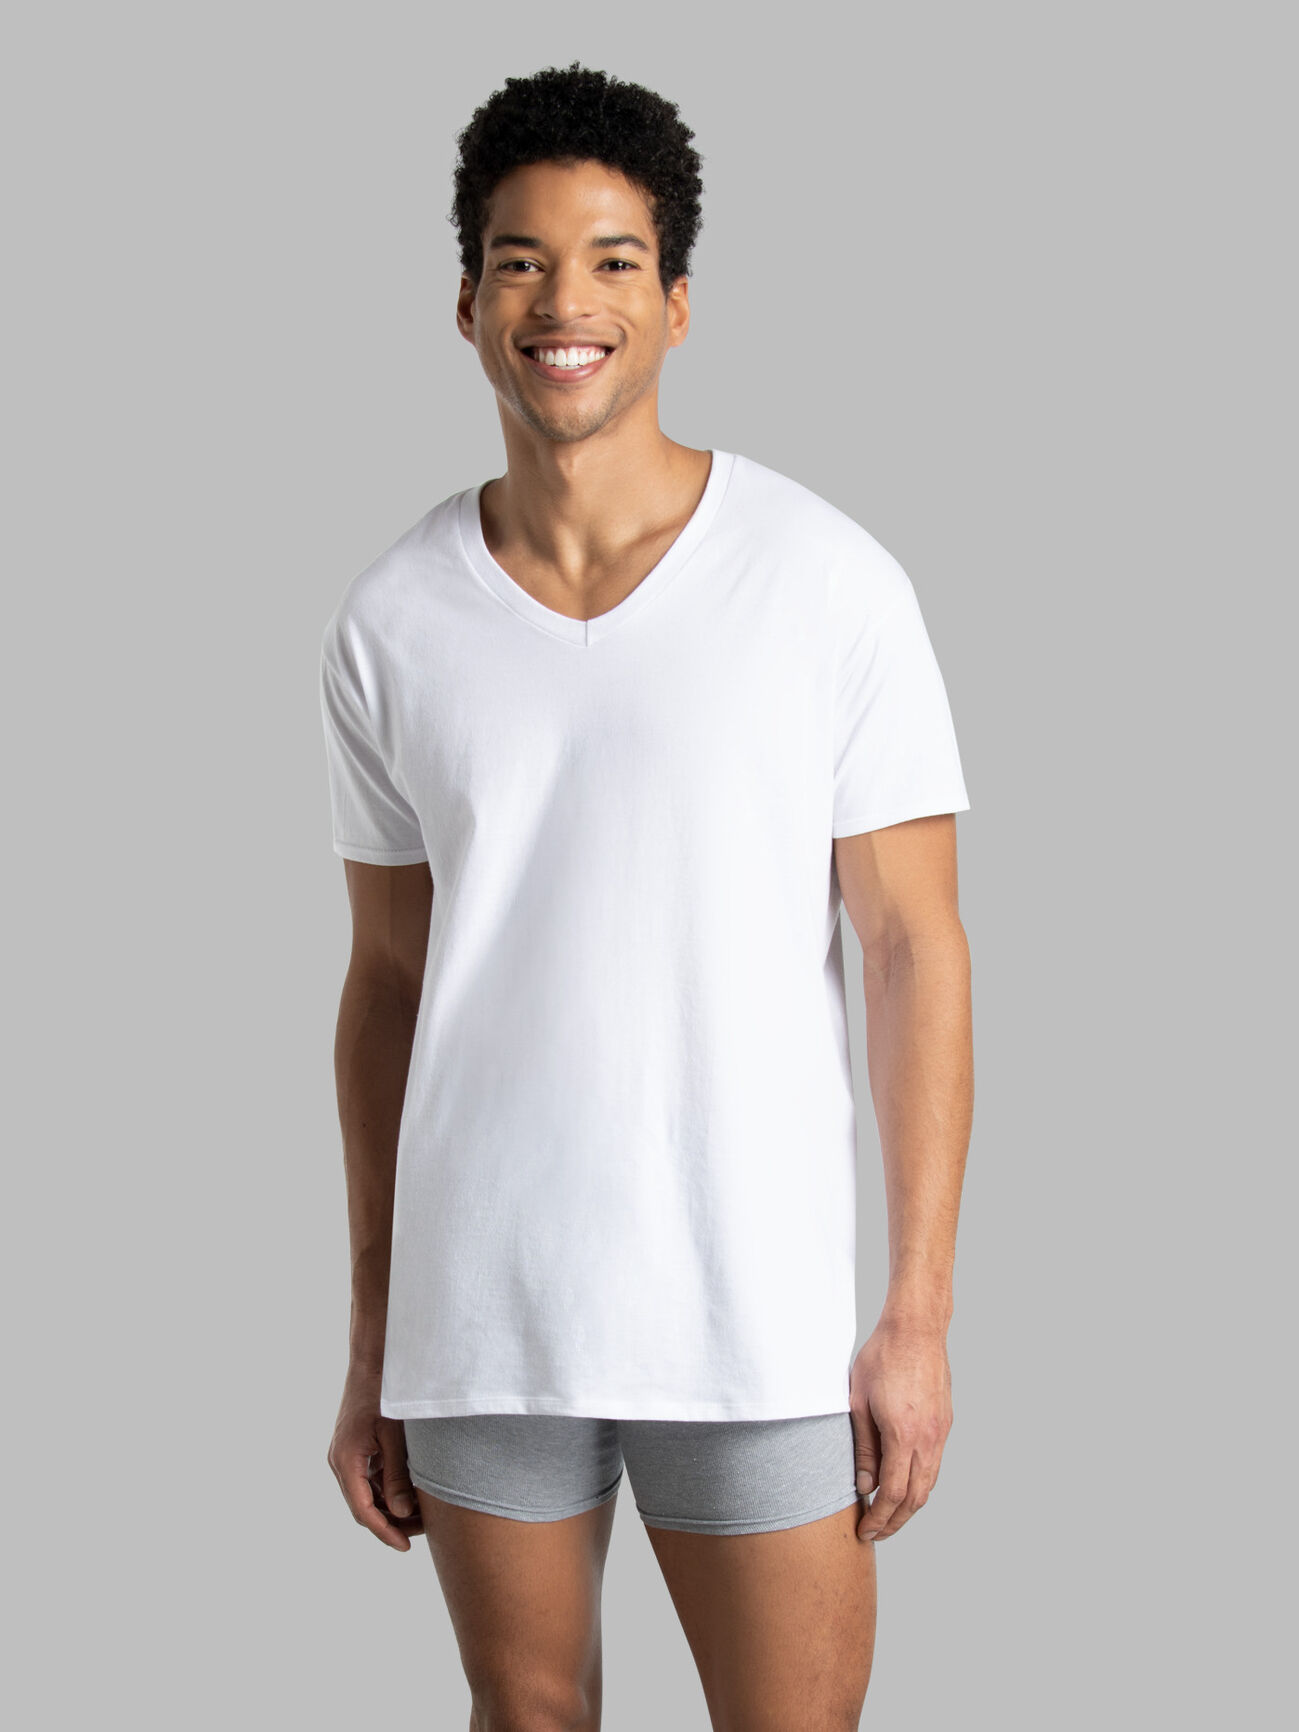 White V-Neck T-Shirt For Men